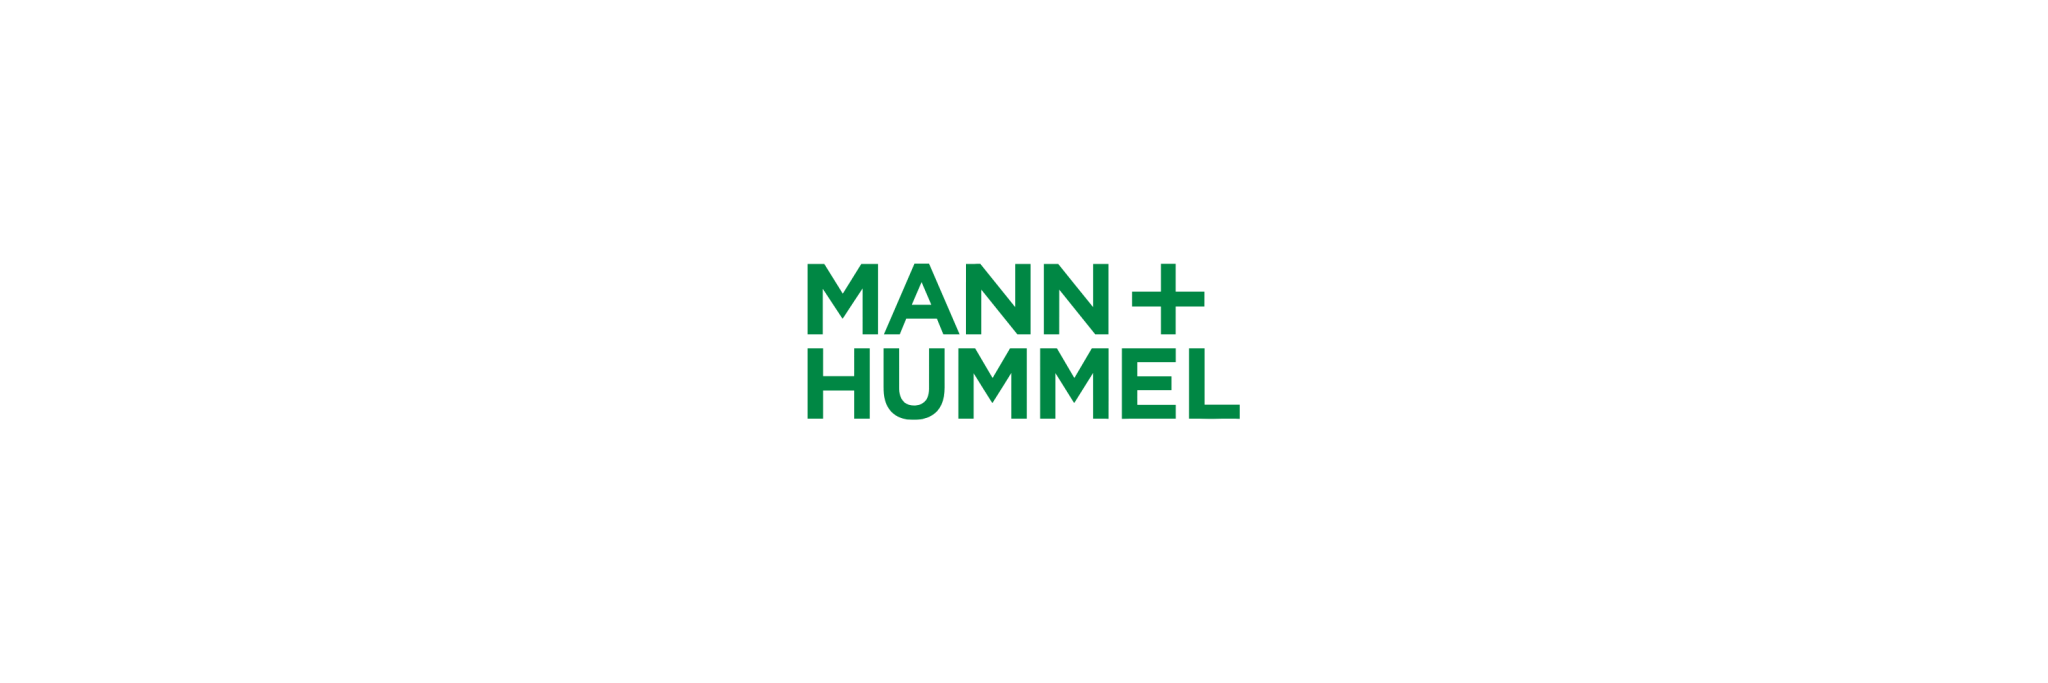 MANN+HUMMEL - Klenk Maschinenhandel